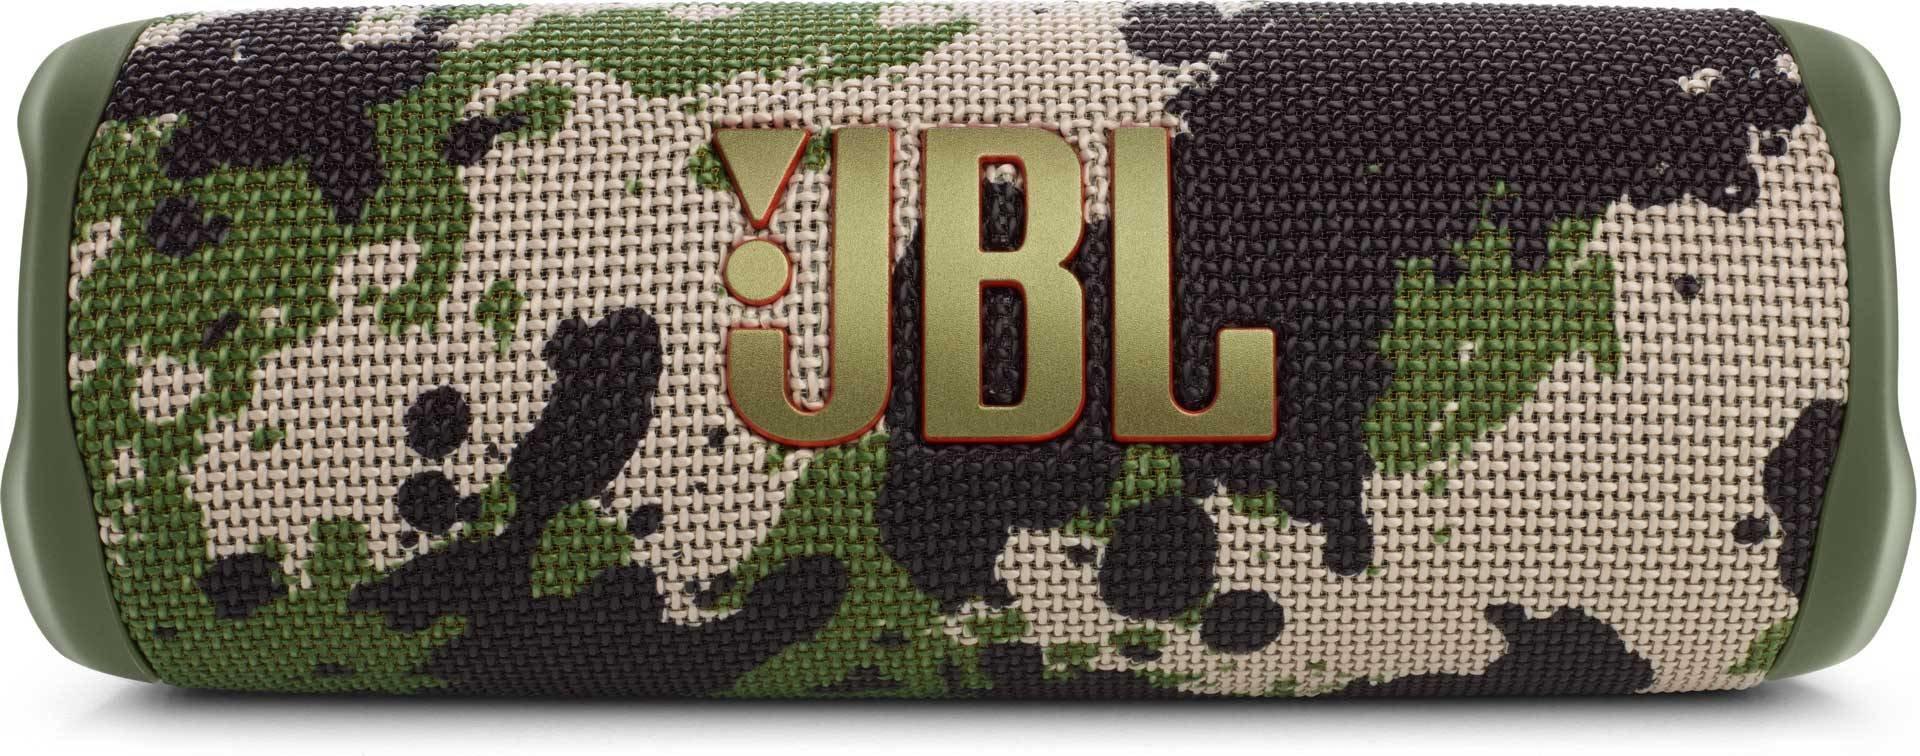 JBL  JBL FLIP 6 Tragbarer Stereo-Lautsprecher Khaki 20 W 